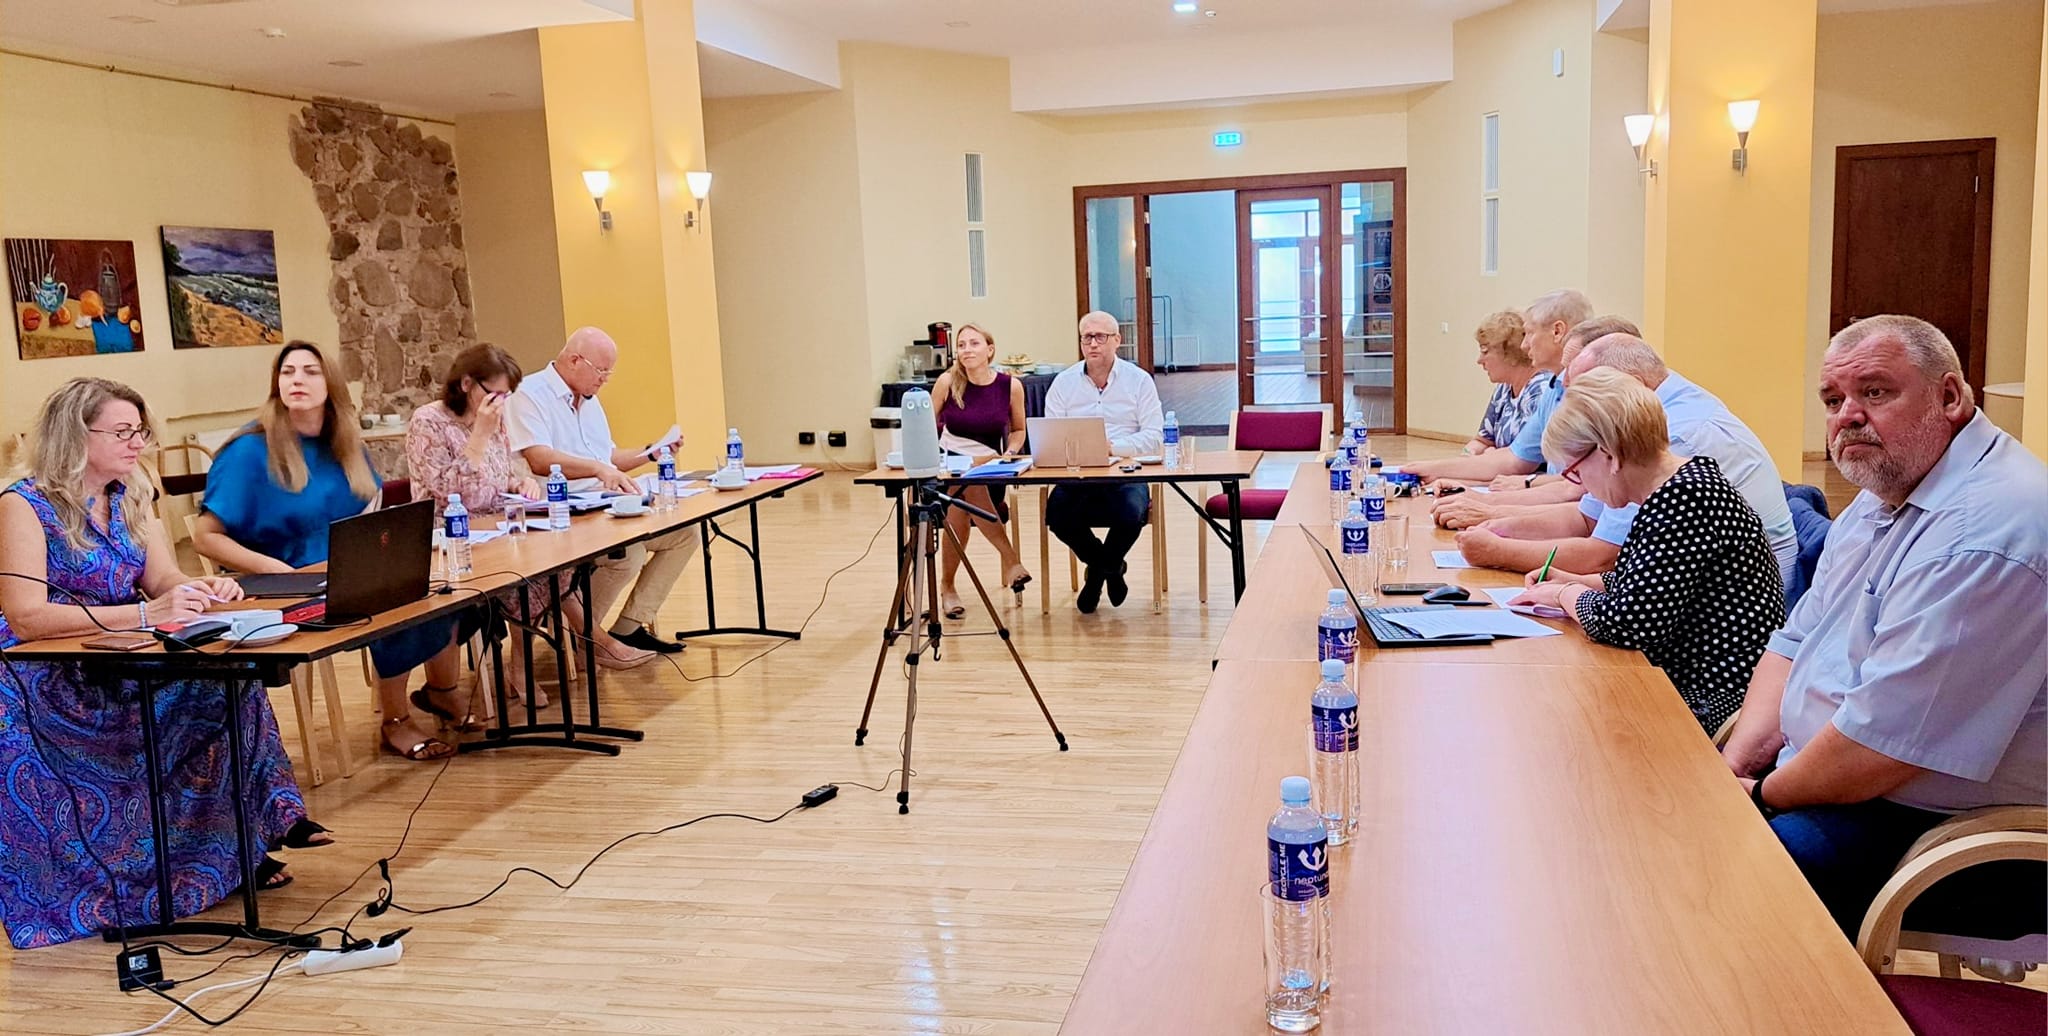 KPR Attīstības padome - attēlā redzami Kurzemes reģiona pašvaldību vadītājio un vadītāju vietnieki sarunā ar IZM pārstāvjiem.